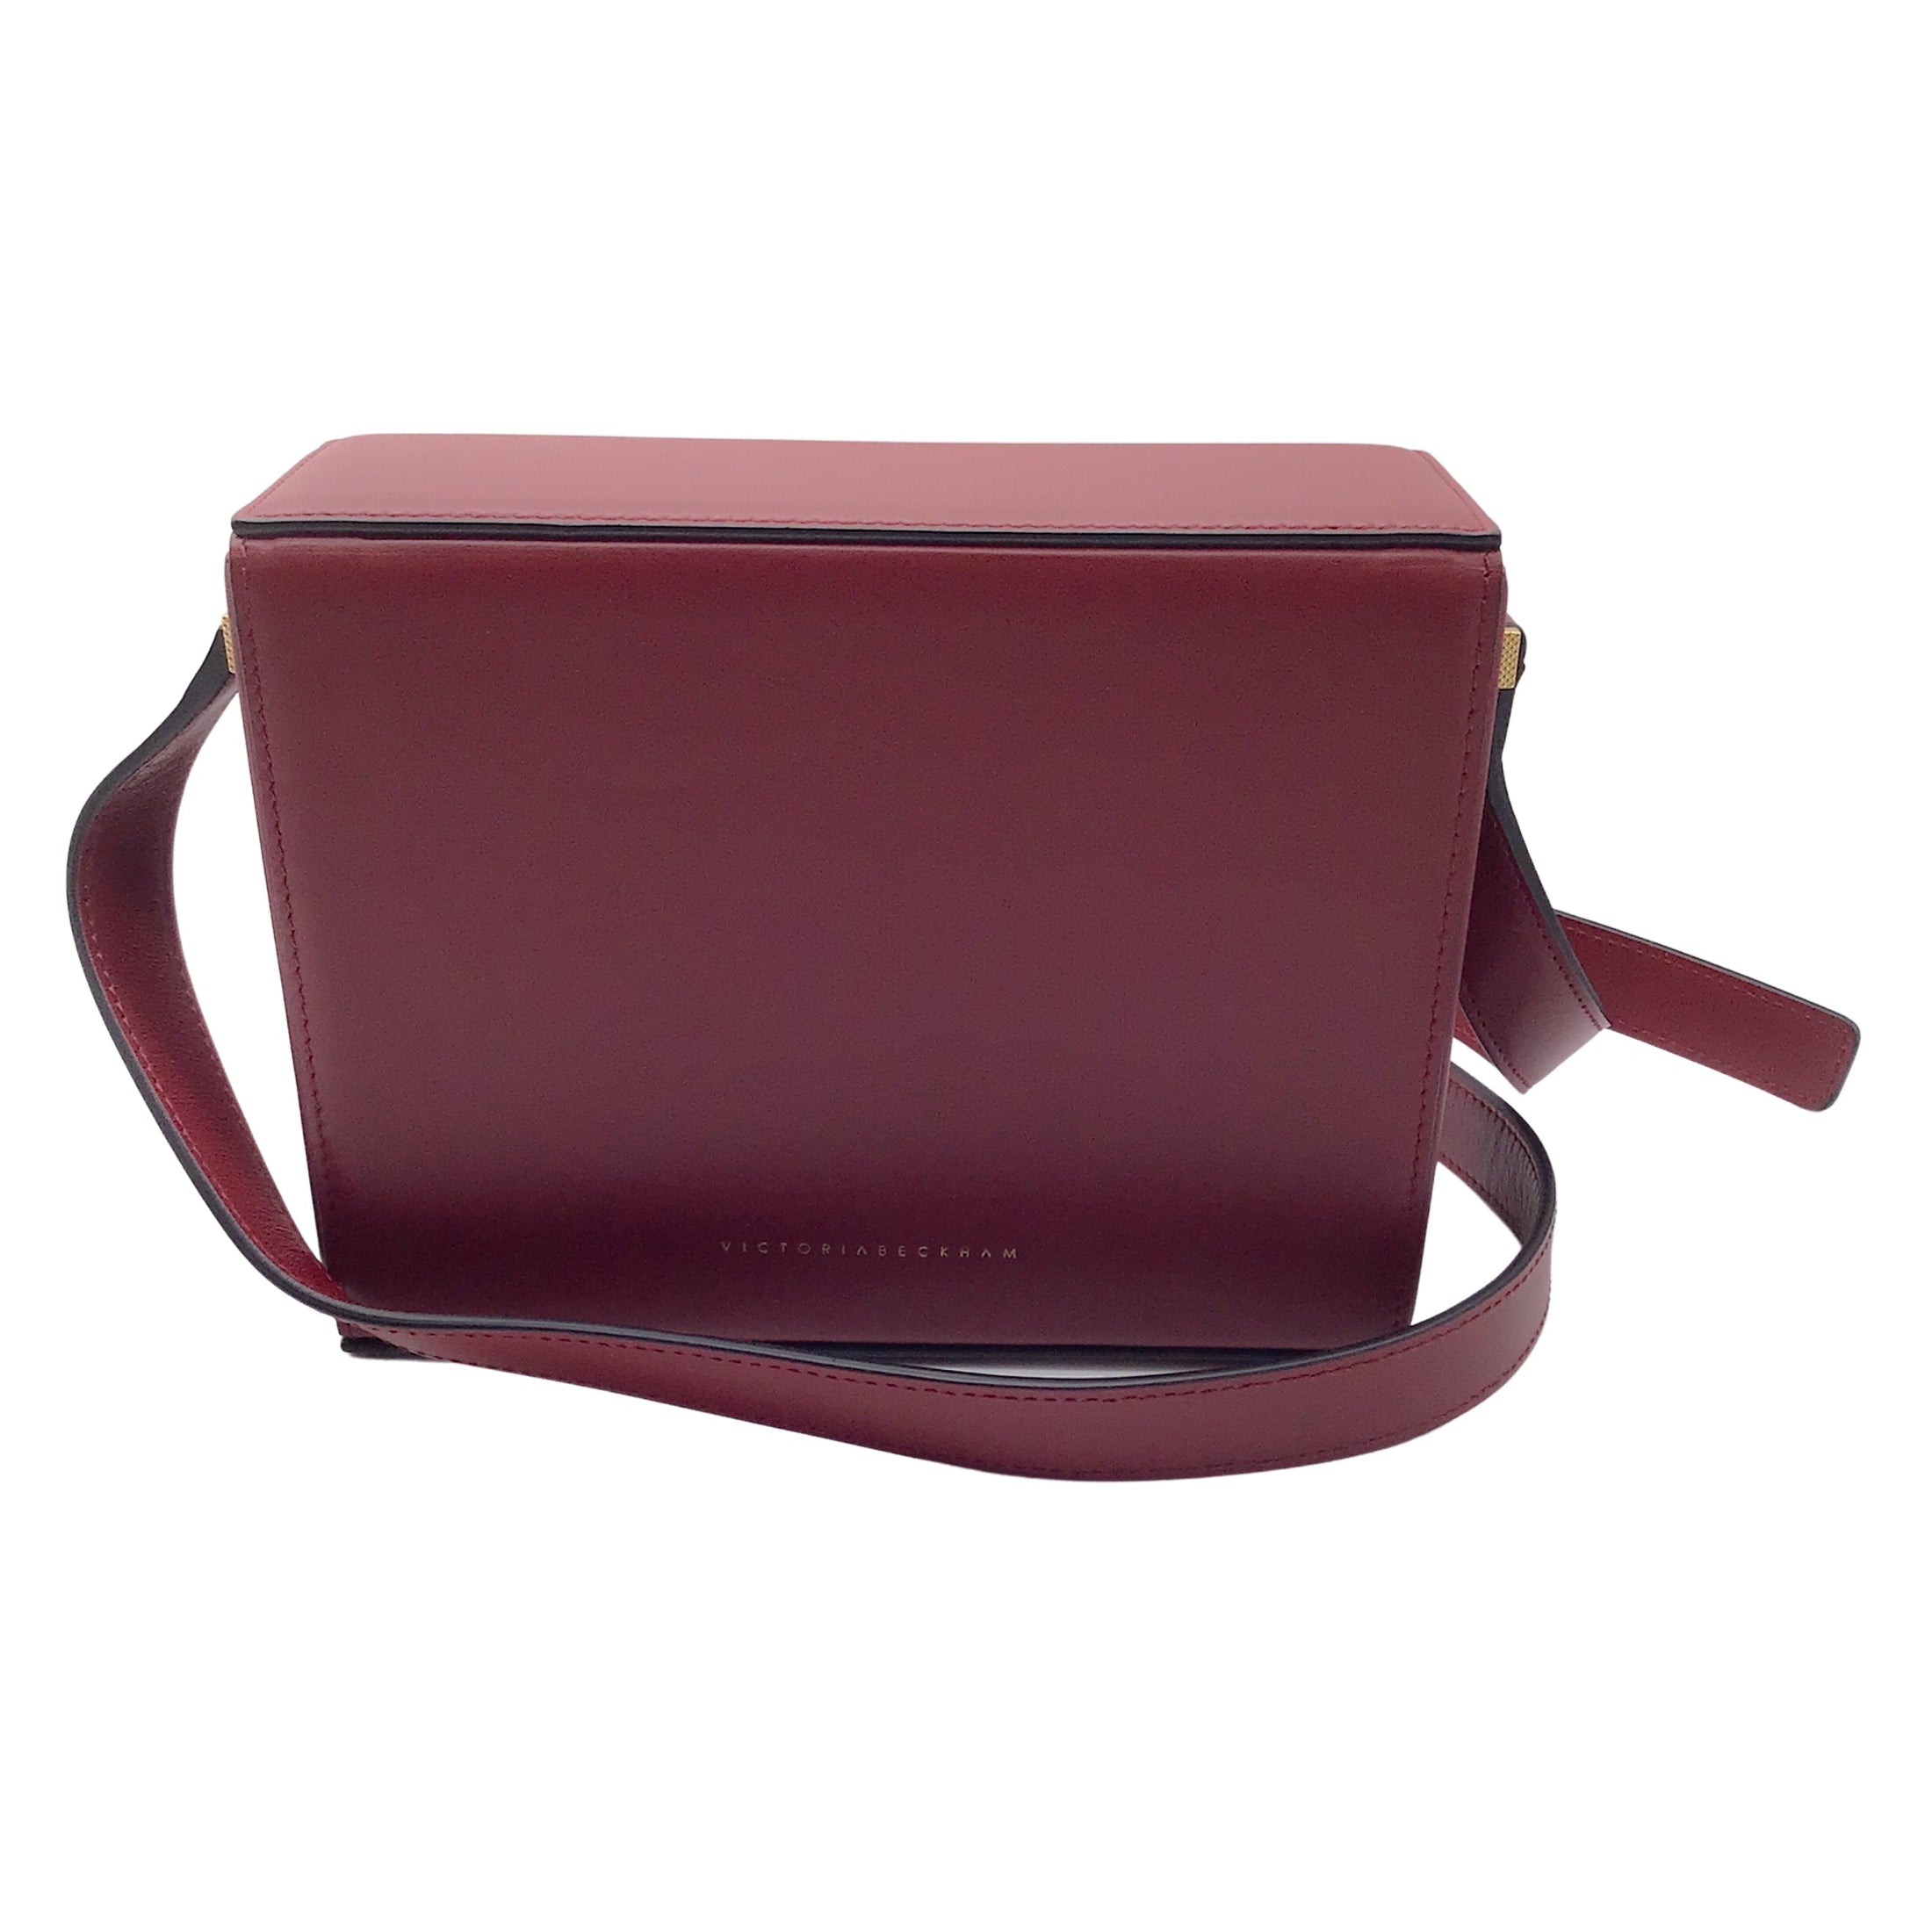 Victoria Beckham Vanity Red Leather Shoulder Bag